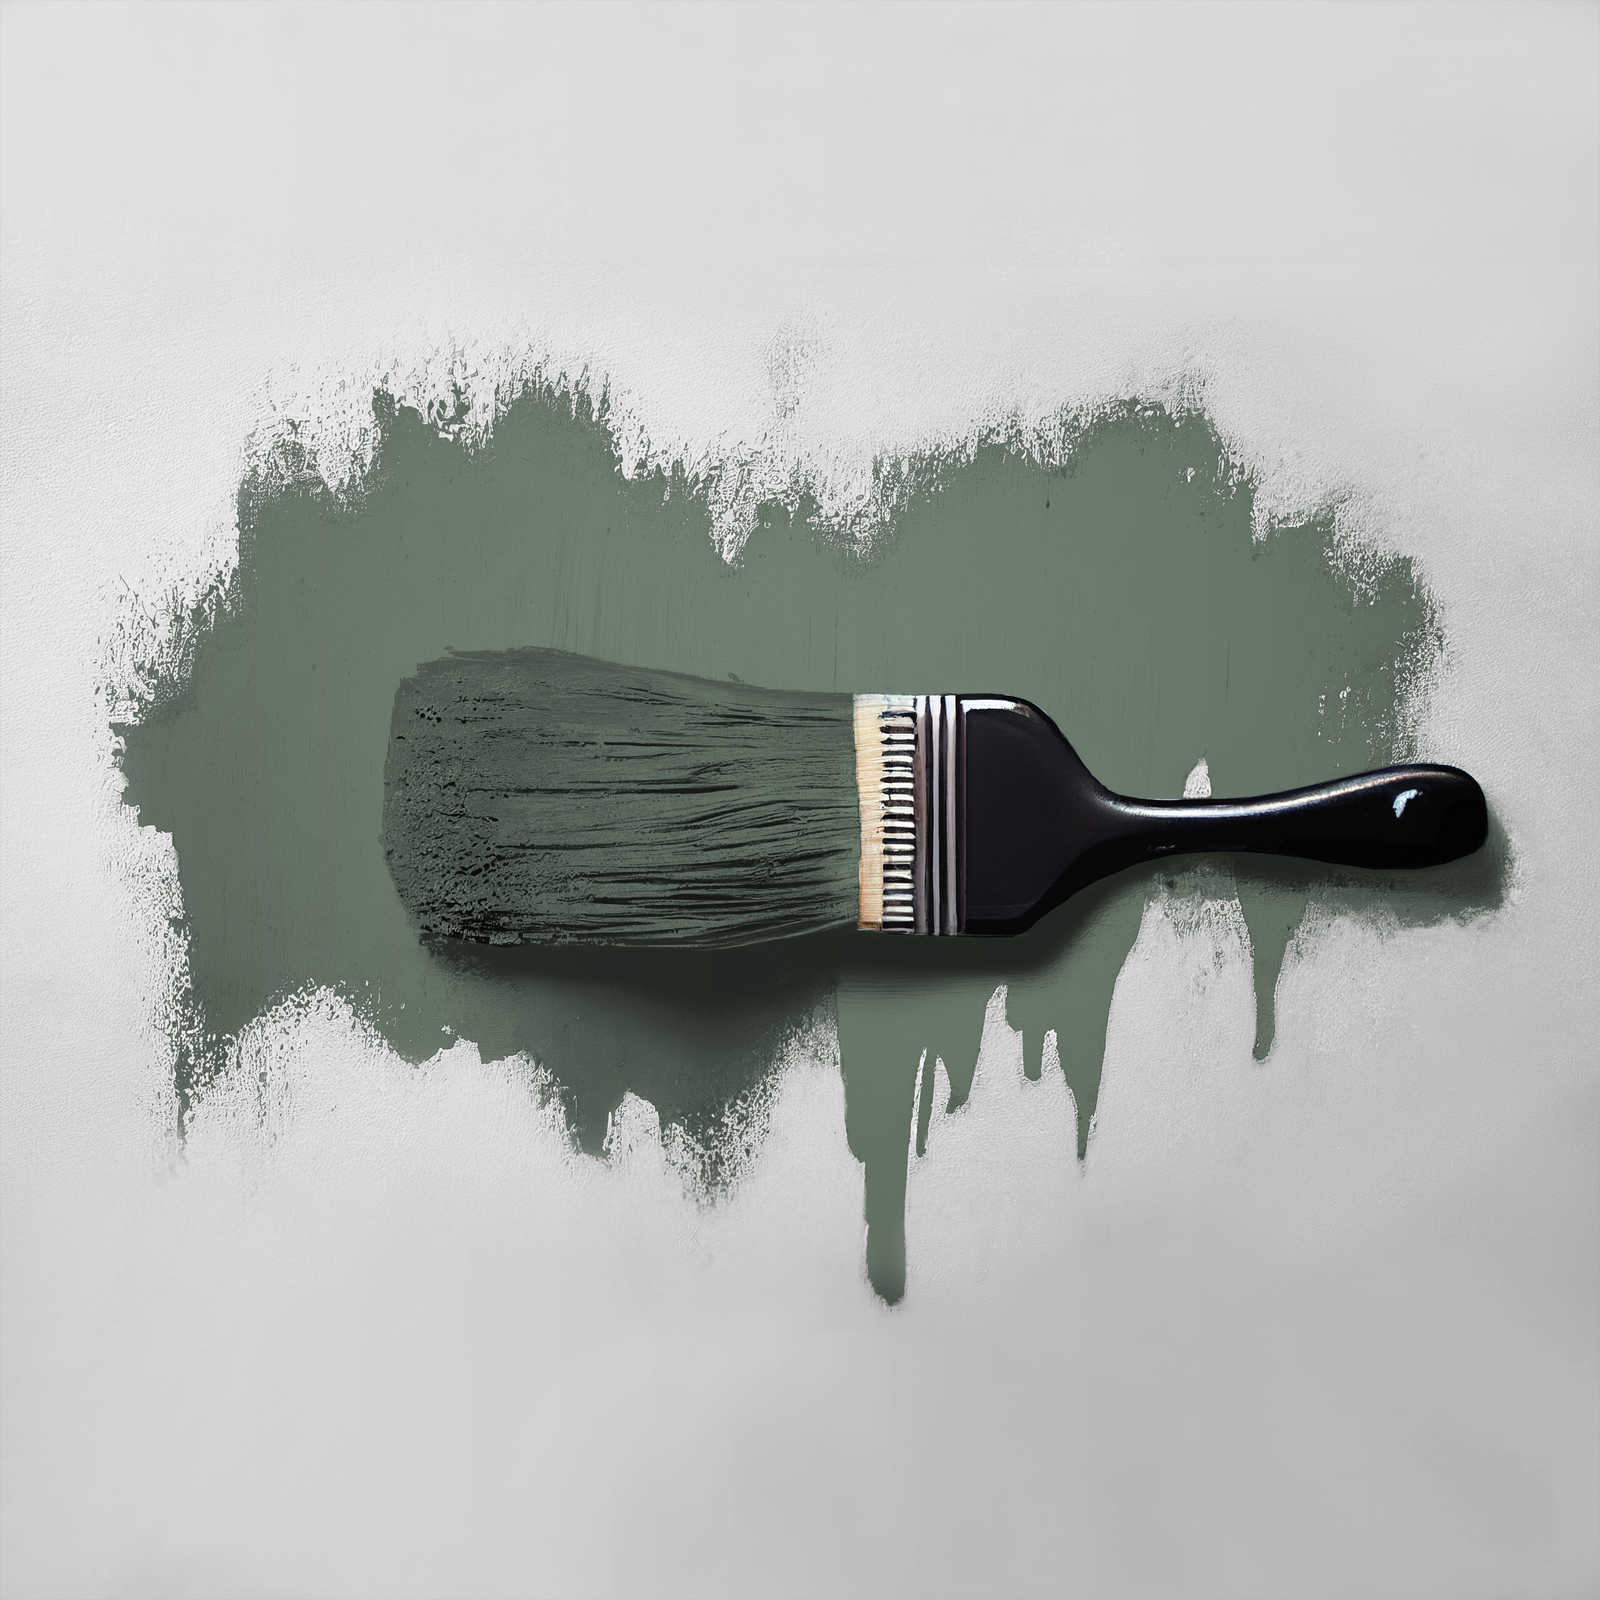             Peinture murale TCK4005 »Ritzy Rosemary« en vert confortable – 5,0 litres
        